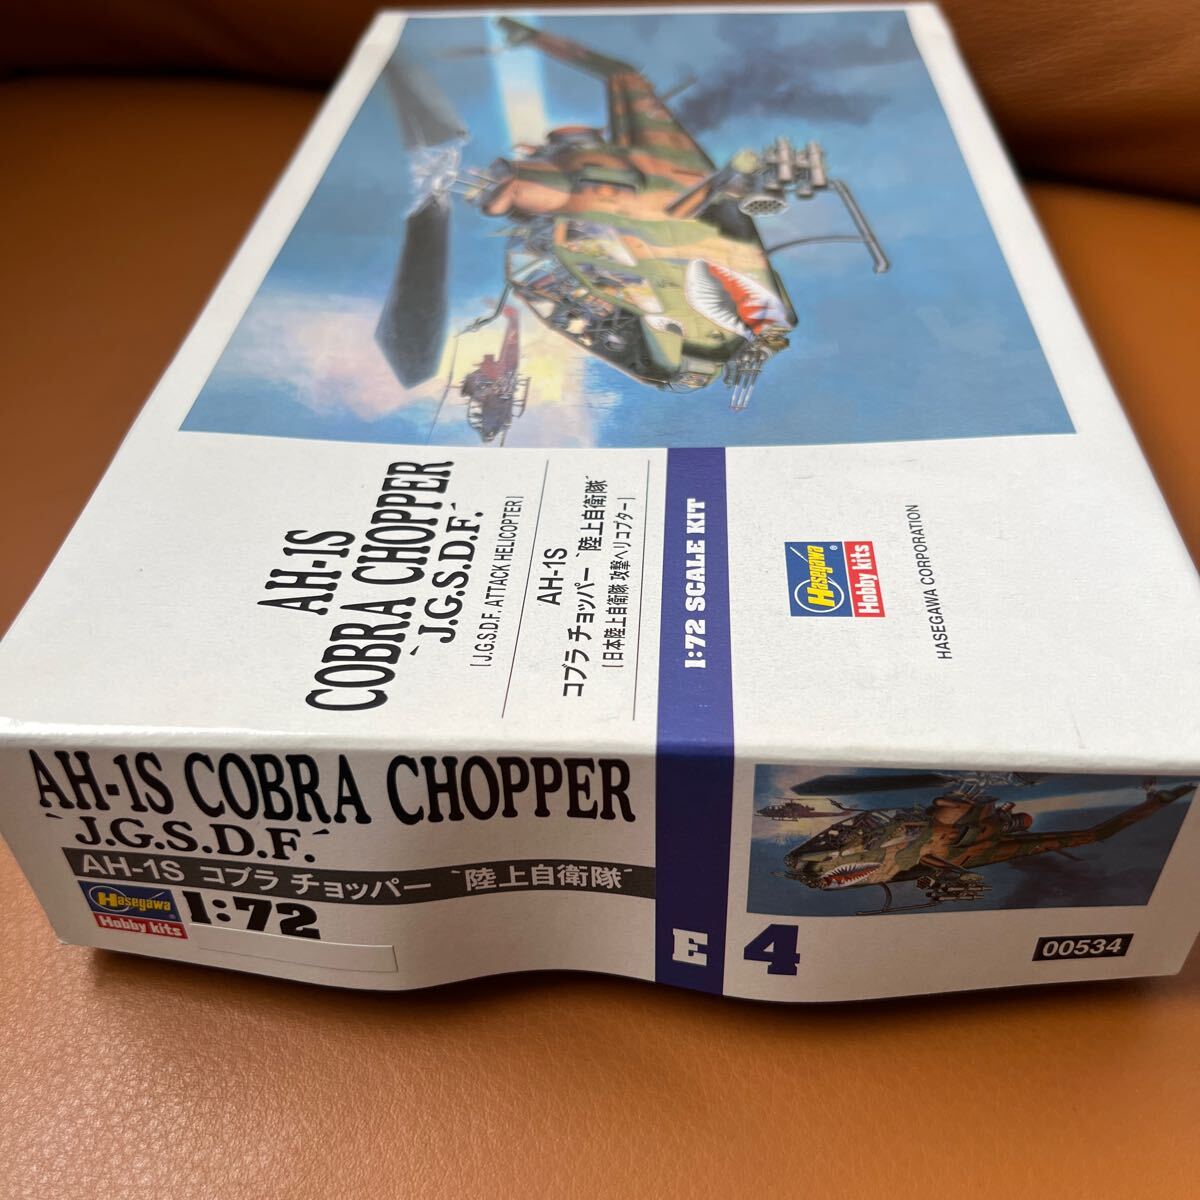 プラモデル ハセガワ HASEGAWA 1/72 AH-1S コブラ チョッパー 陸上自衛隊 COBRA CHOPPER J.G.S.D.F攻撃ヘリコプター 古い未組立 戦闘機 19_画像6